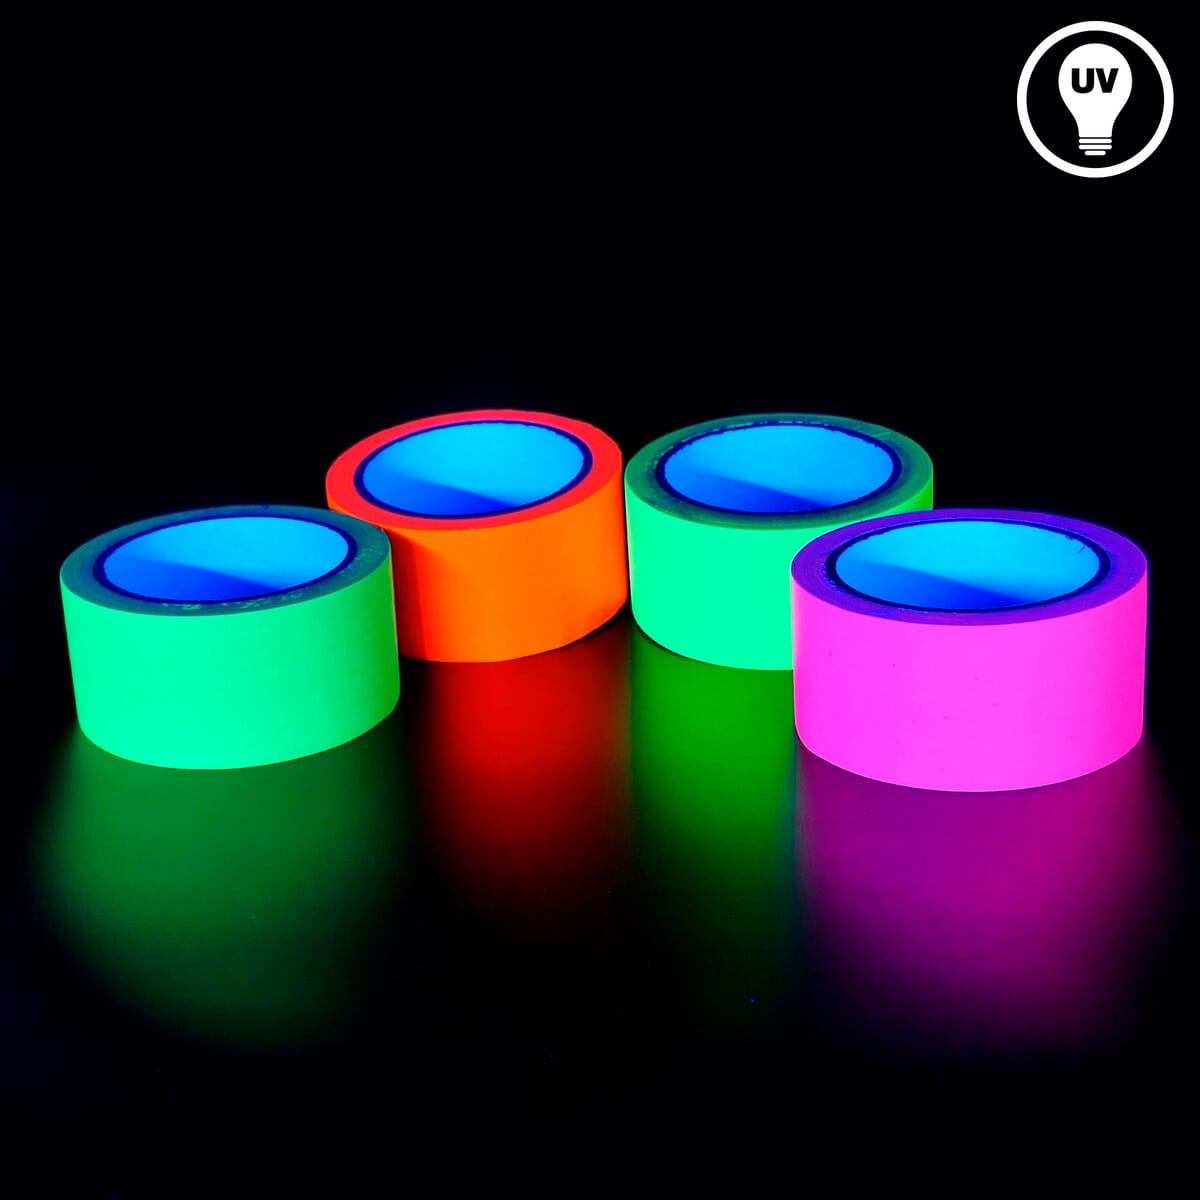 Neon Klebeband [Größere Größe] Neon Gaffa Tape, UV aktiv Tape,  Fluoreszierendes, Leuchtband, 6 Farben, 25MM*15M Pro Rolle für Halloween